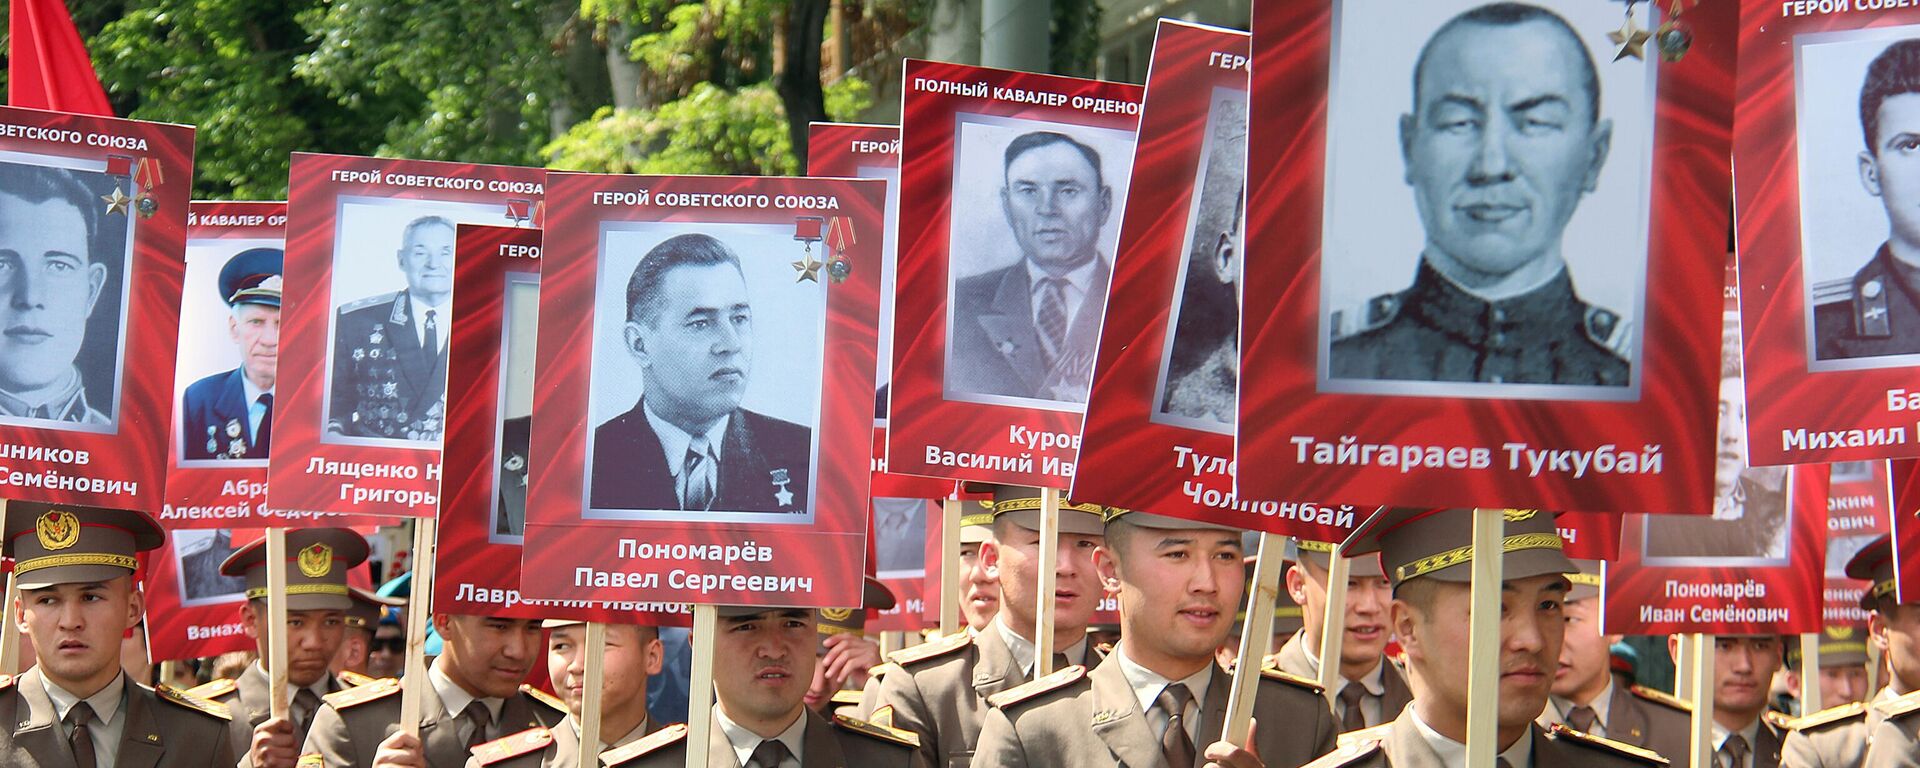 Sovyetler Birliği'nin İkinci Dünya Savaşı'nda Nazi Almanya'sını yendiği gün olarak kabul edilen 9 Mayıs Zafer Bayramı'nın 78. yıl dönümü, Kırgızistan genelinde törenlerle kutlandı. - Sputnik Türkiye, 1920, 09.05.2023